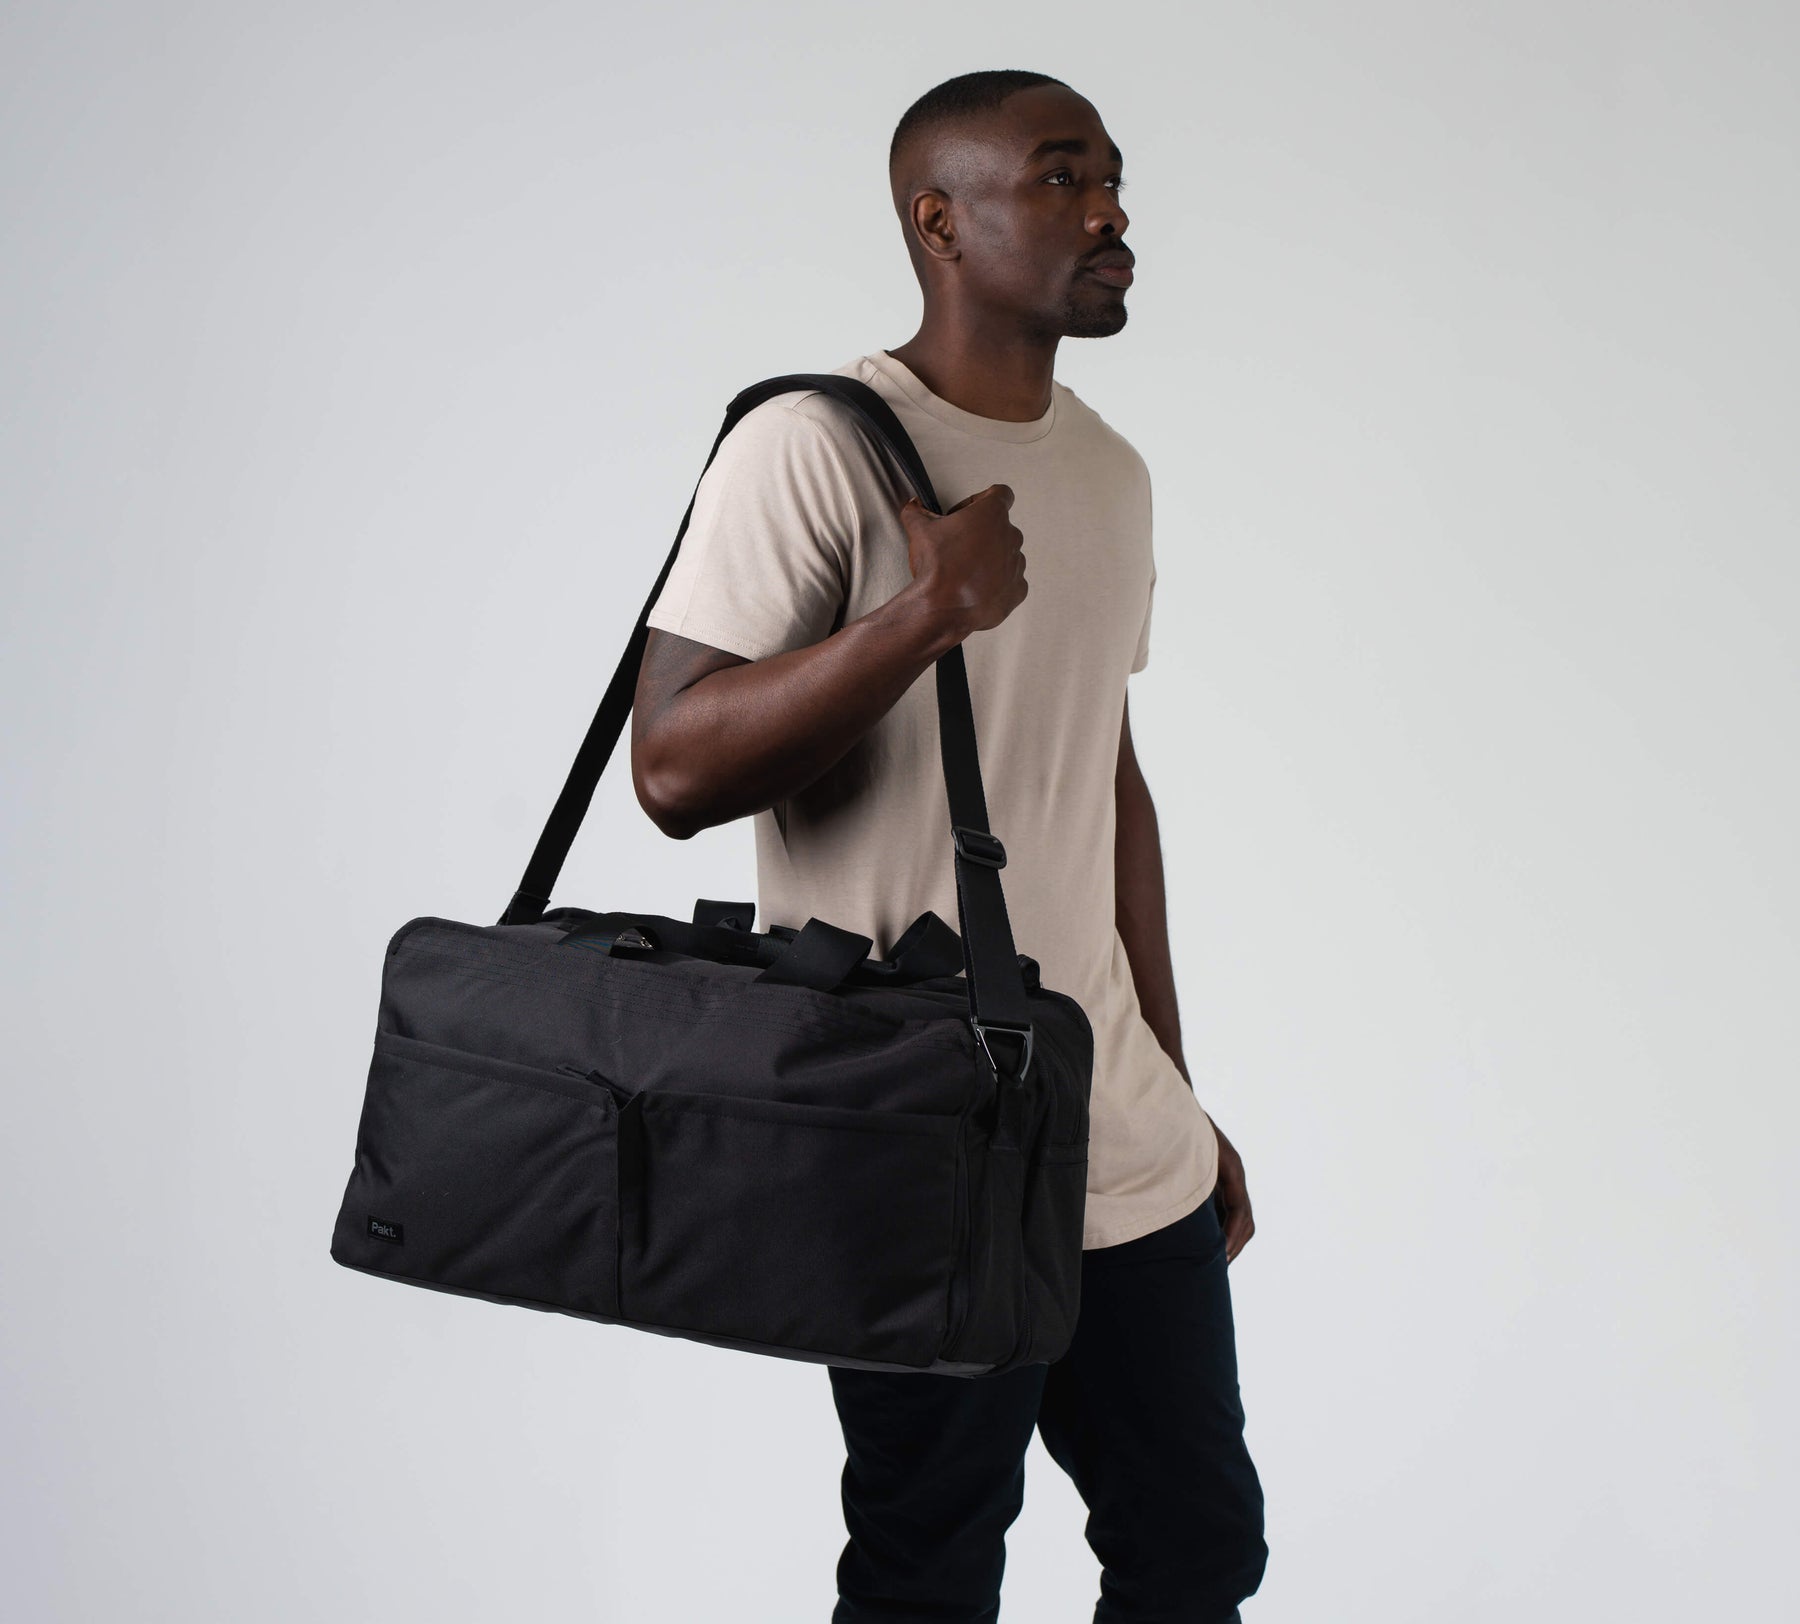 Travel Backpack, Shoulder Bag